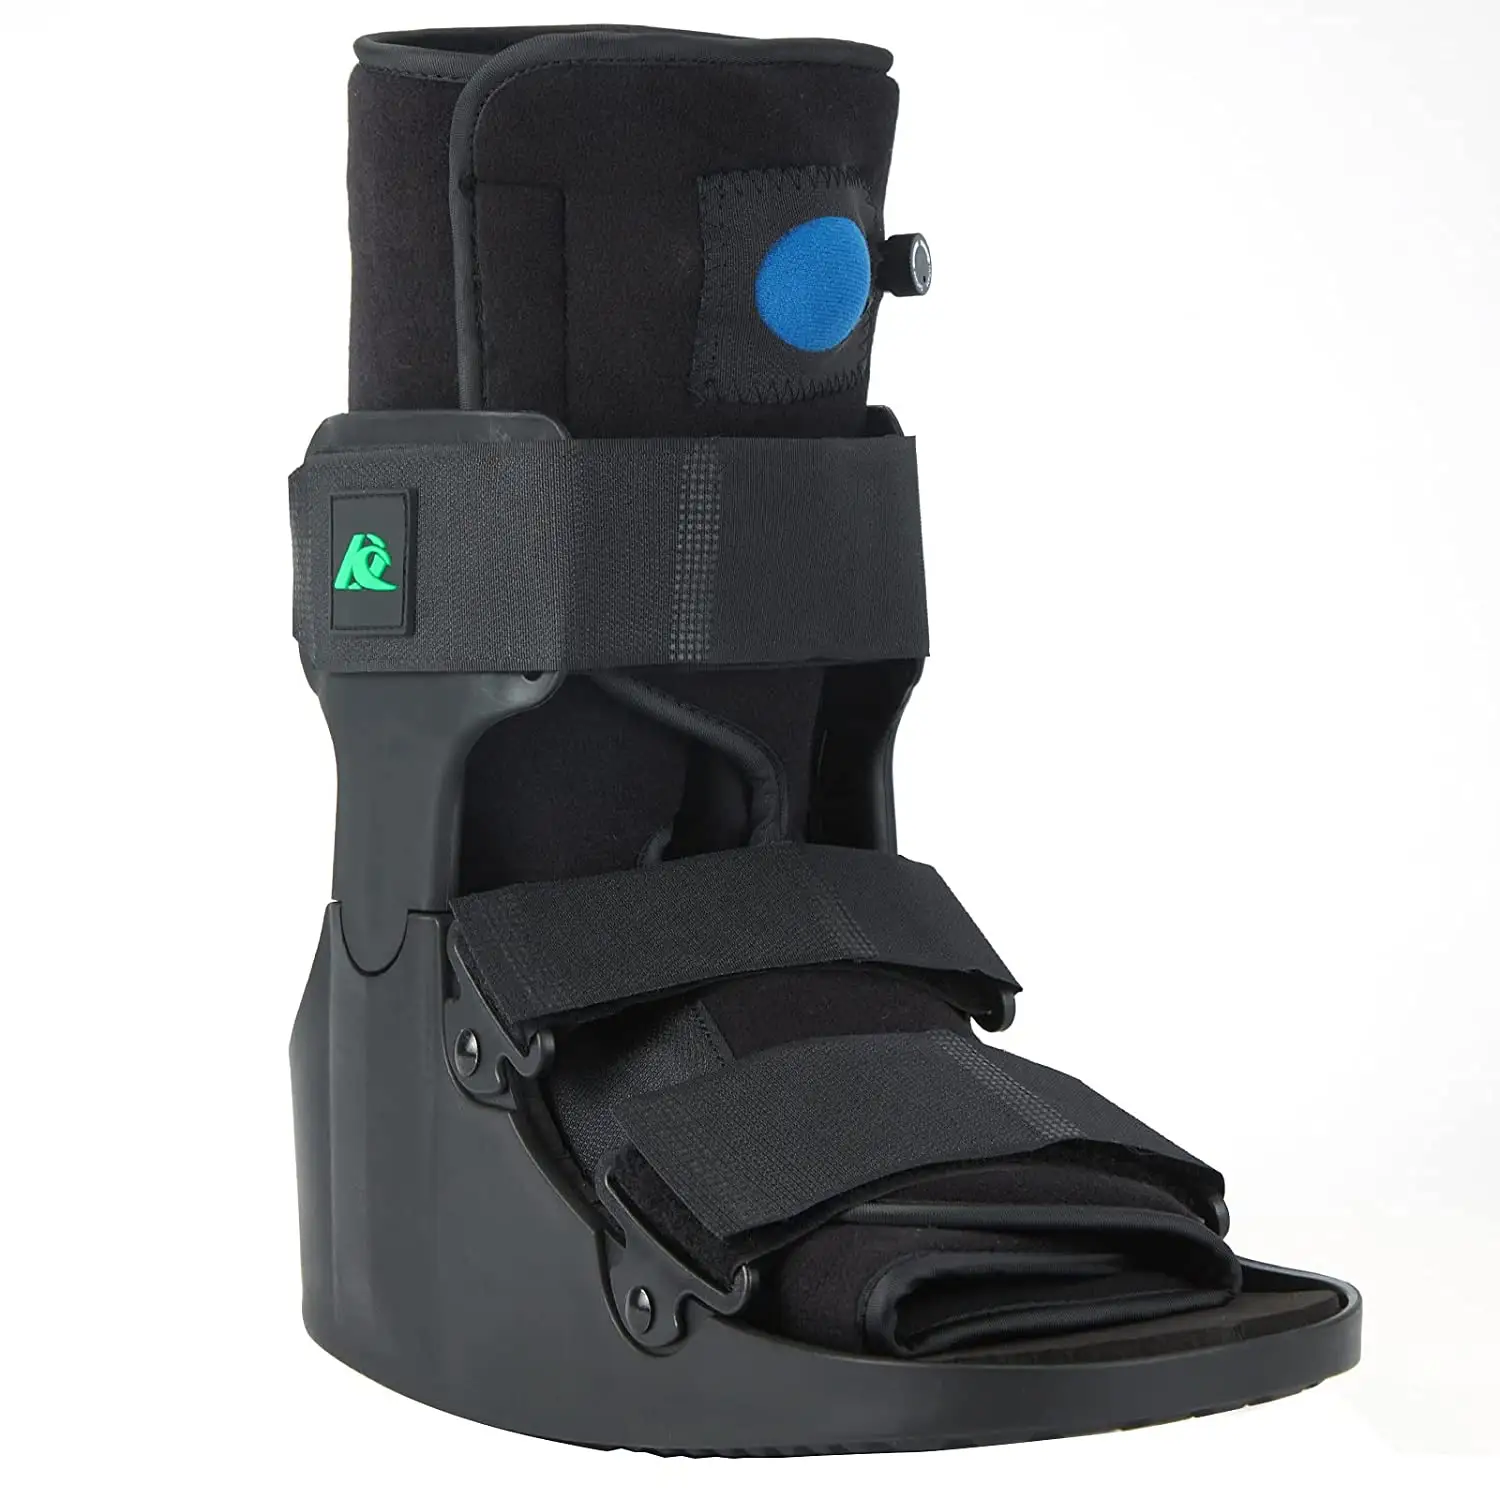 รองเท้าออร์โธพีดิกส์สำหรับกระดูกหัก,อุปกรณ์พยุงเท้าข้อเท้าสำหรับเดิน